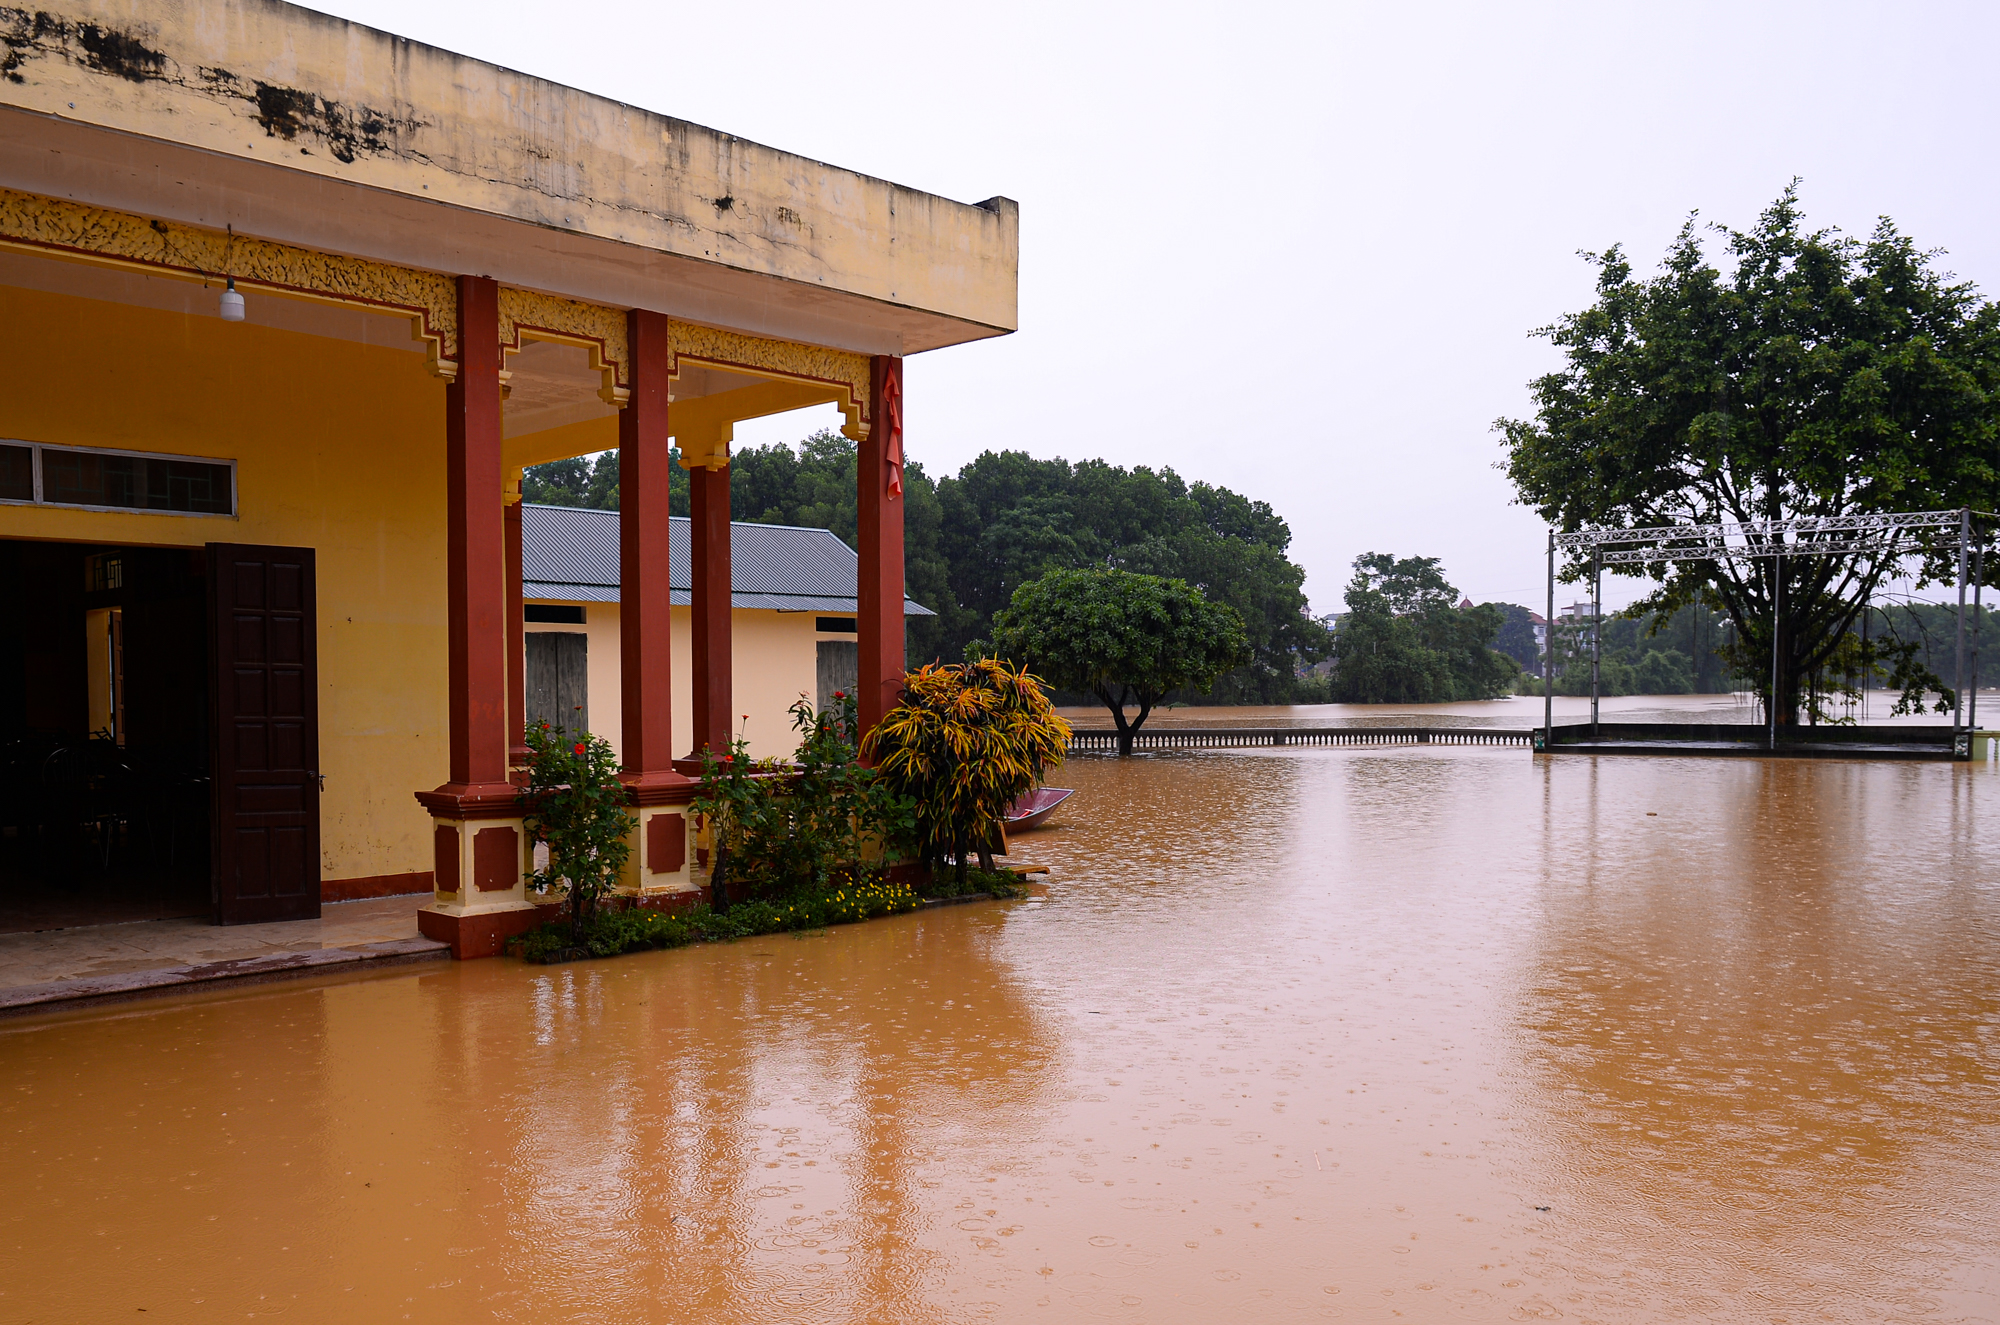 Người dân ngoại thành Hà Nội bì bõm trong nước lũ sau cơn mưa lớn: &quot;Nước lũ lên nhanh quá, chúng tôi chạy đồ không kịp&quot; - Ảnh 3.